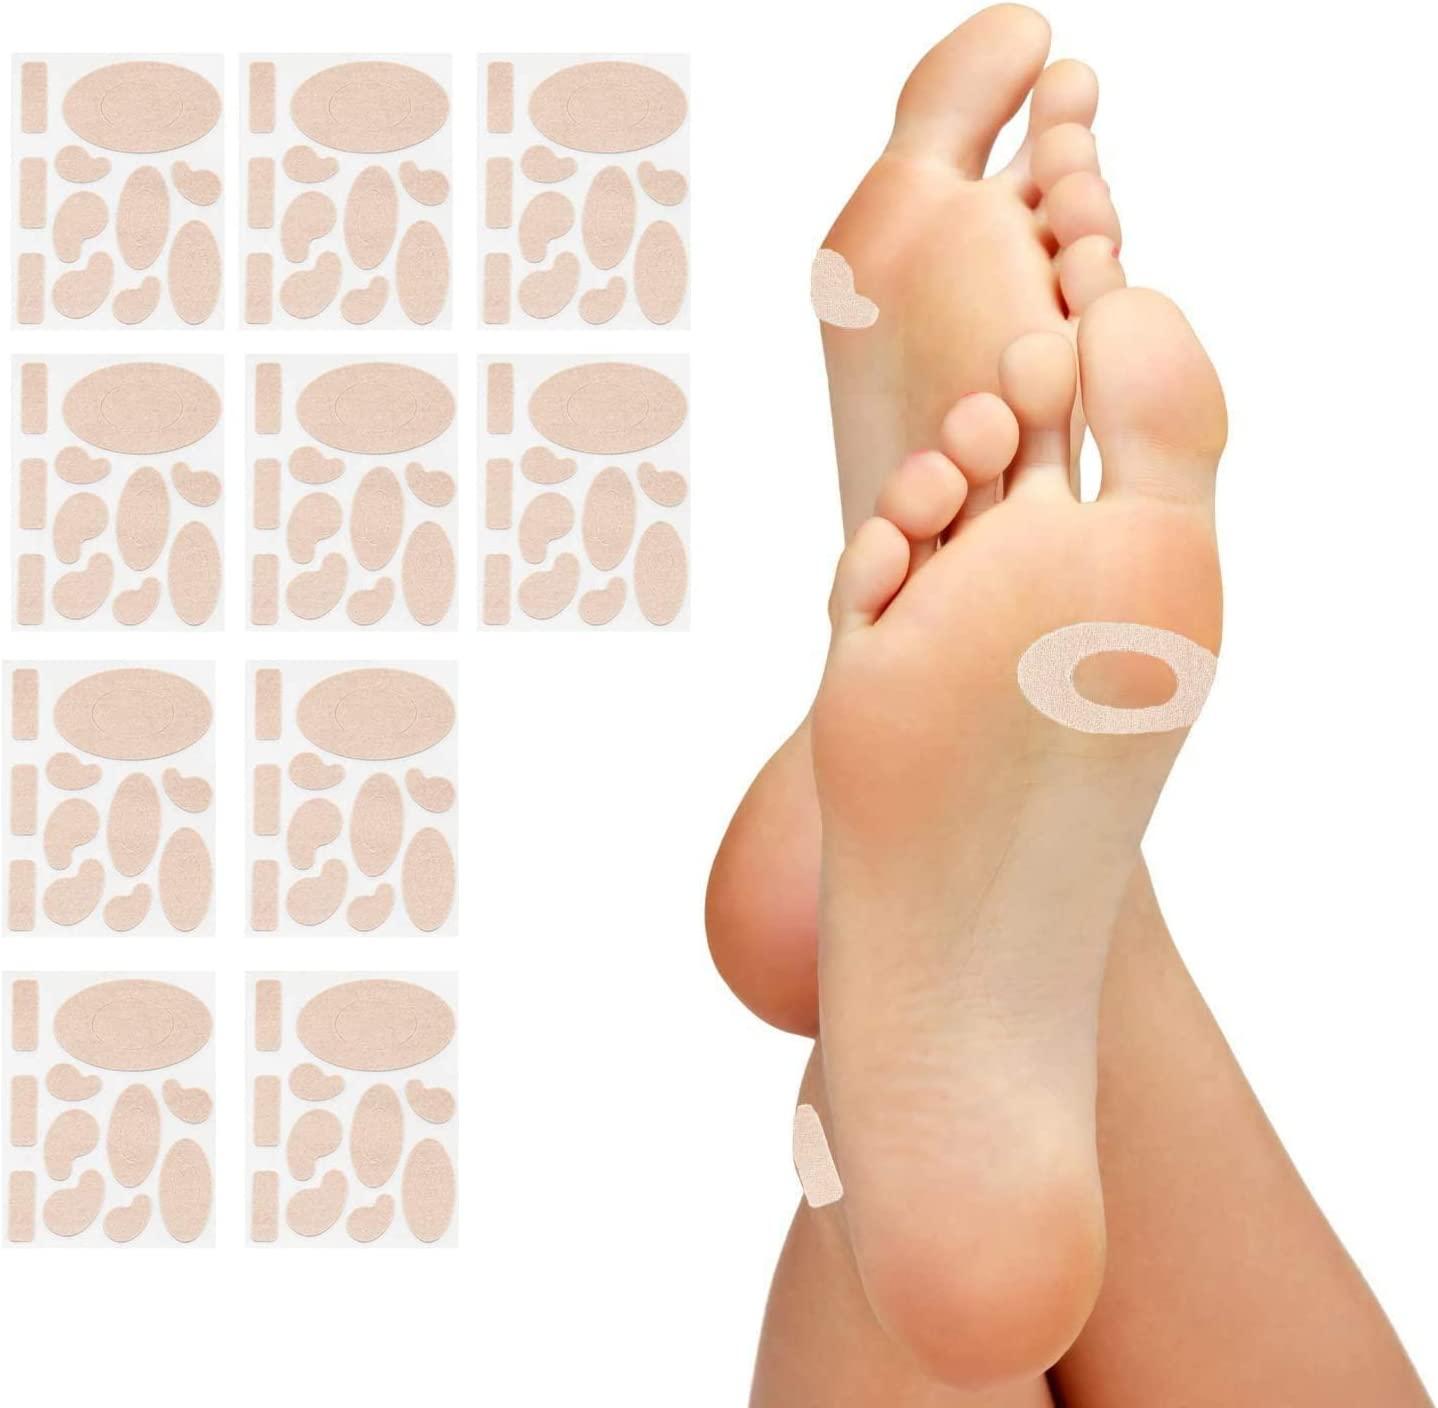 Moleskin Adhesive Pads for Feet - Blister Prevention Padding - 110